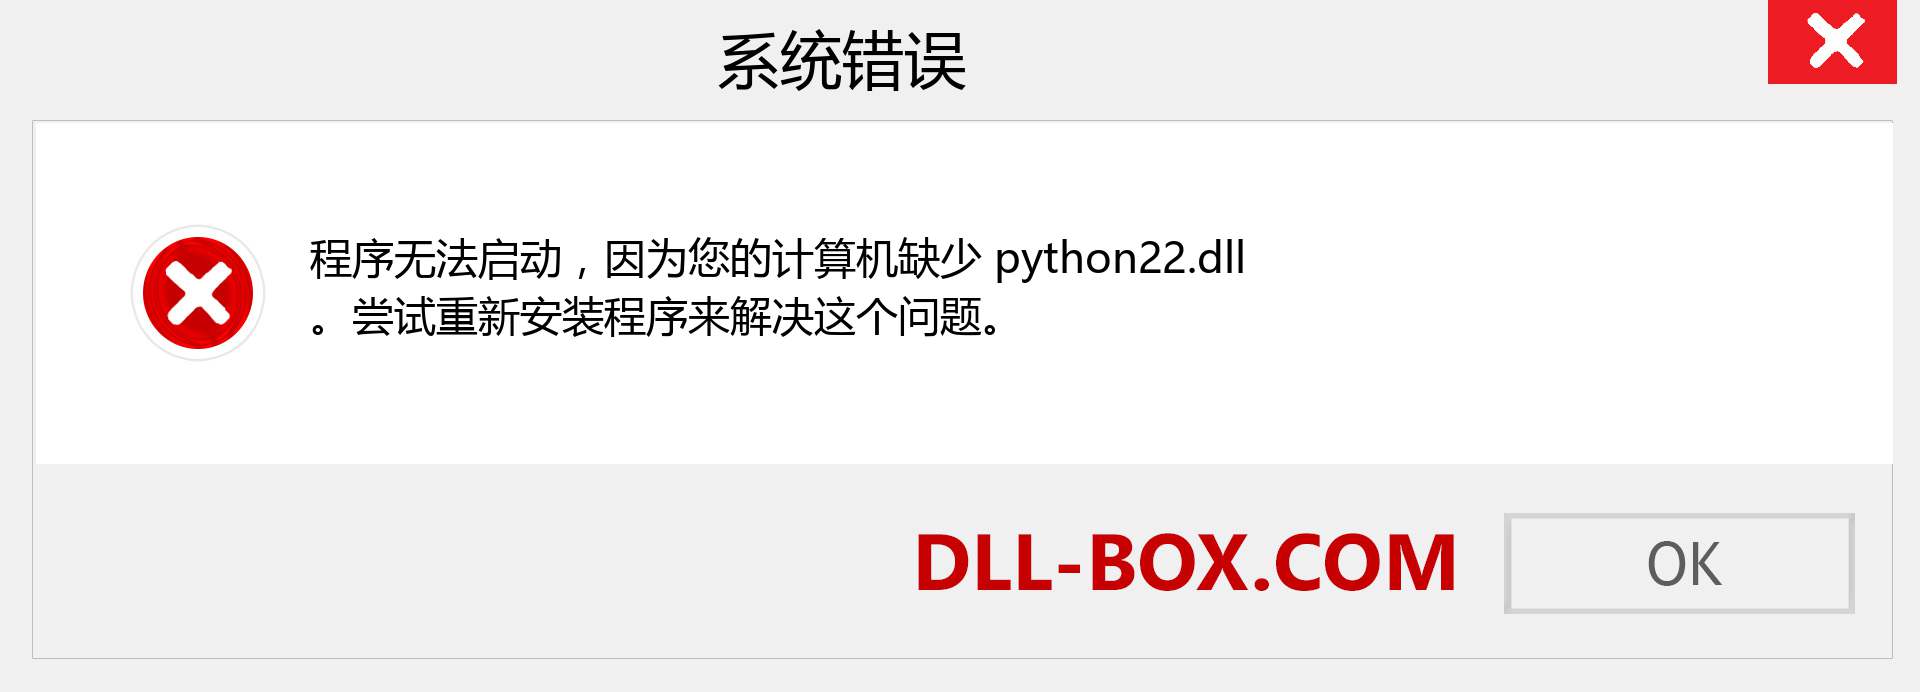 python22.dll 文件丢失？。 适用于 Windows 7、8、10 的下载 - 修复 Windows、照片、图像上的 python22 dll 丢失错误